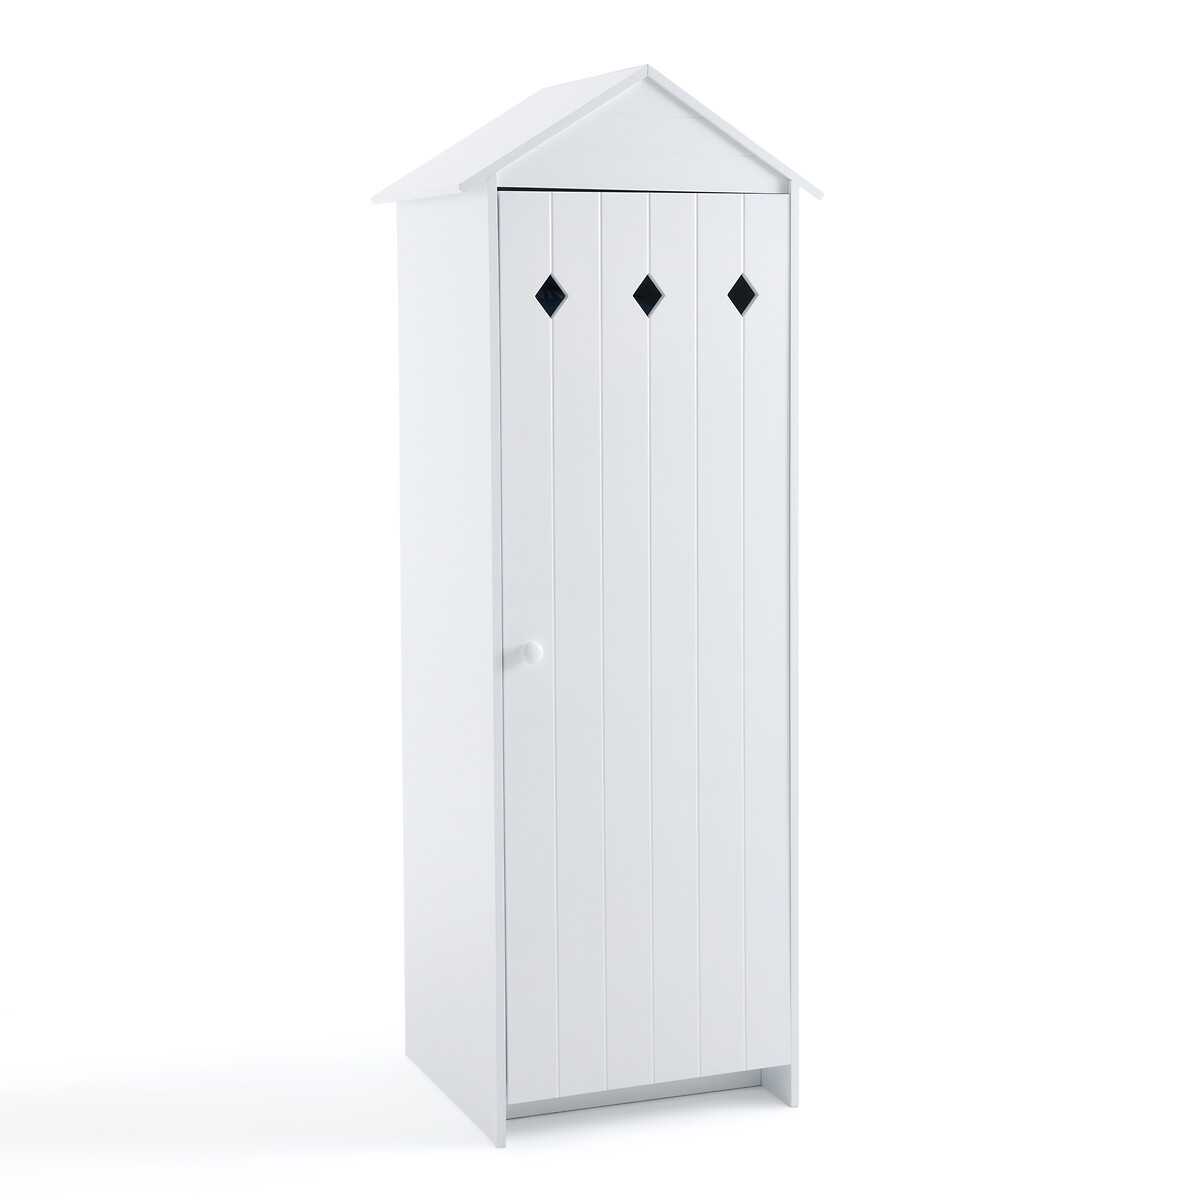 Шкаф С 1 дверцей из лакированного МДФ Noa единый размер белый